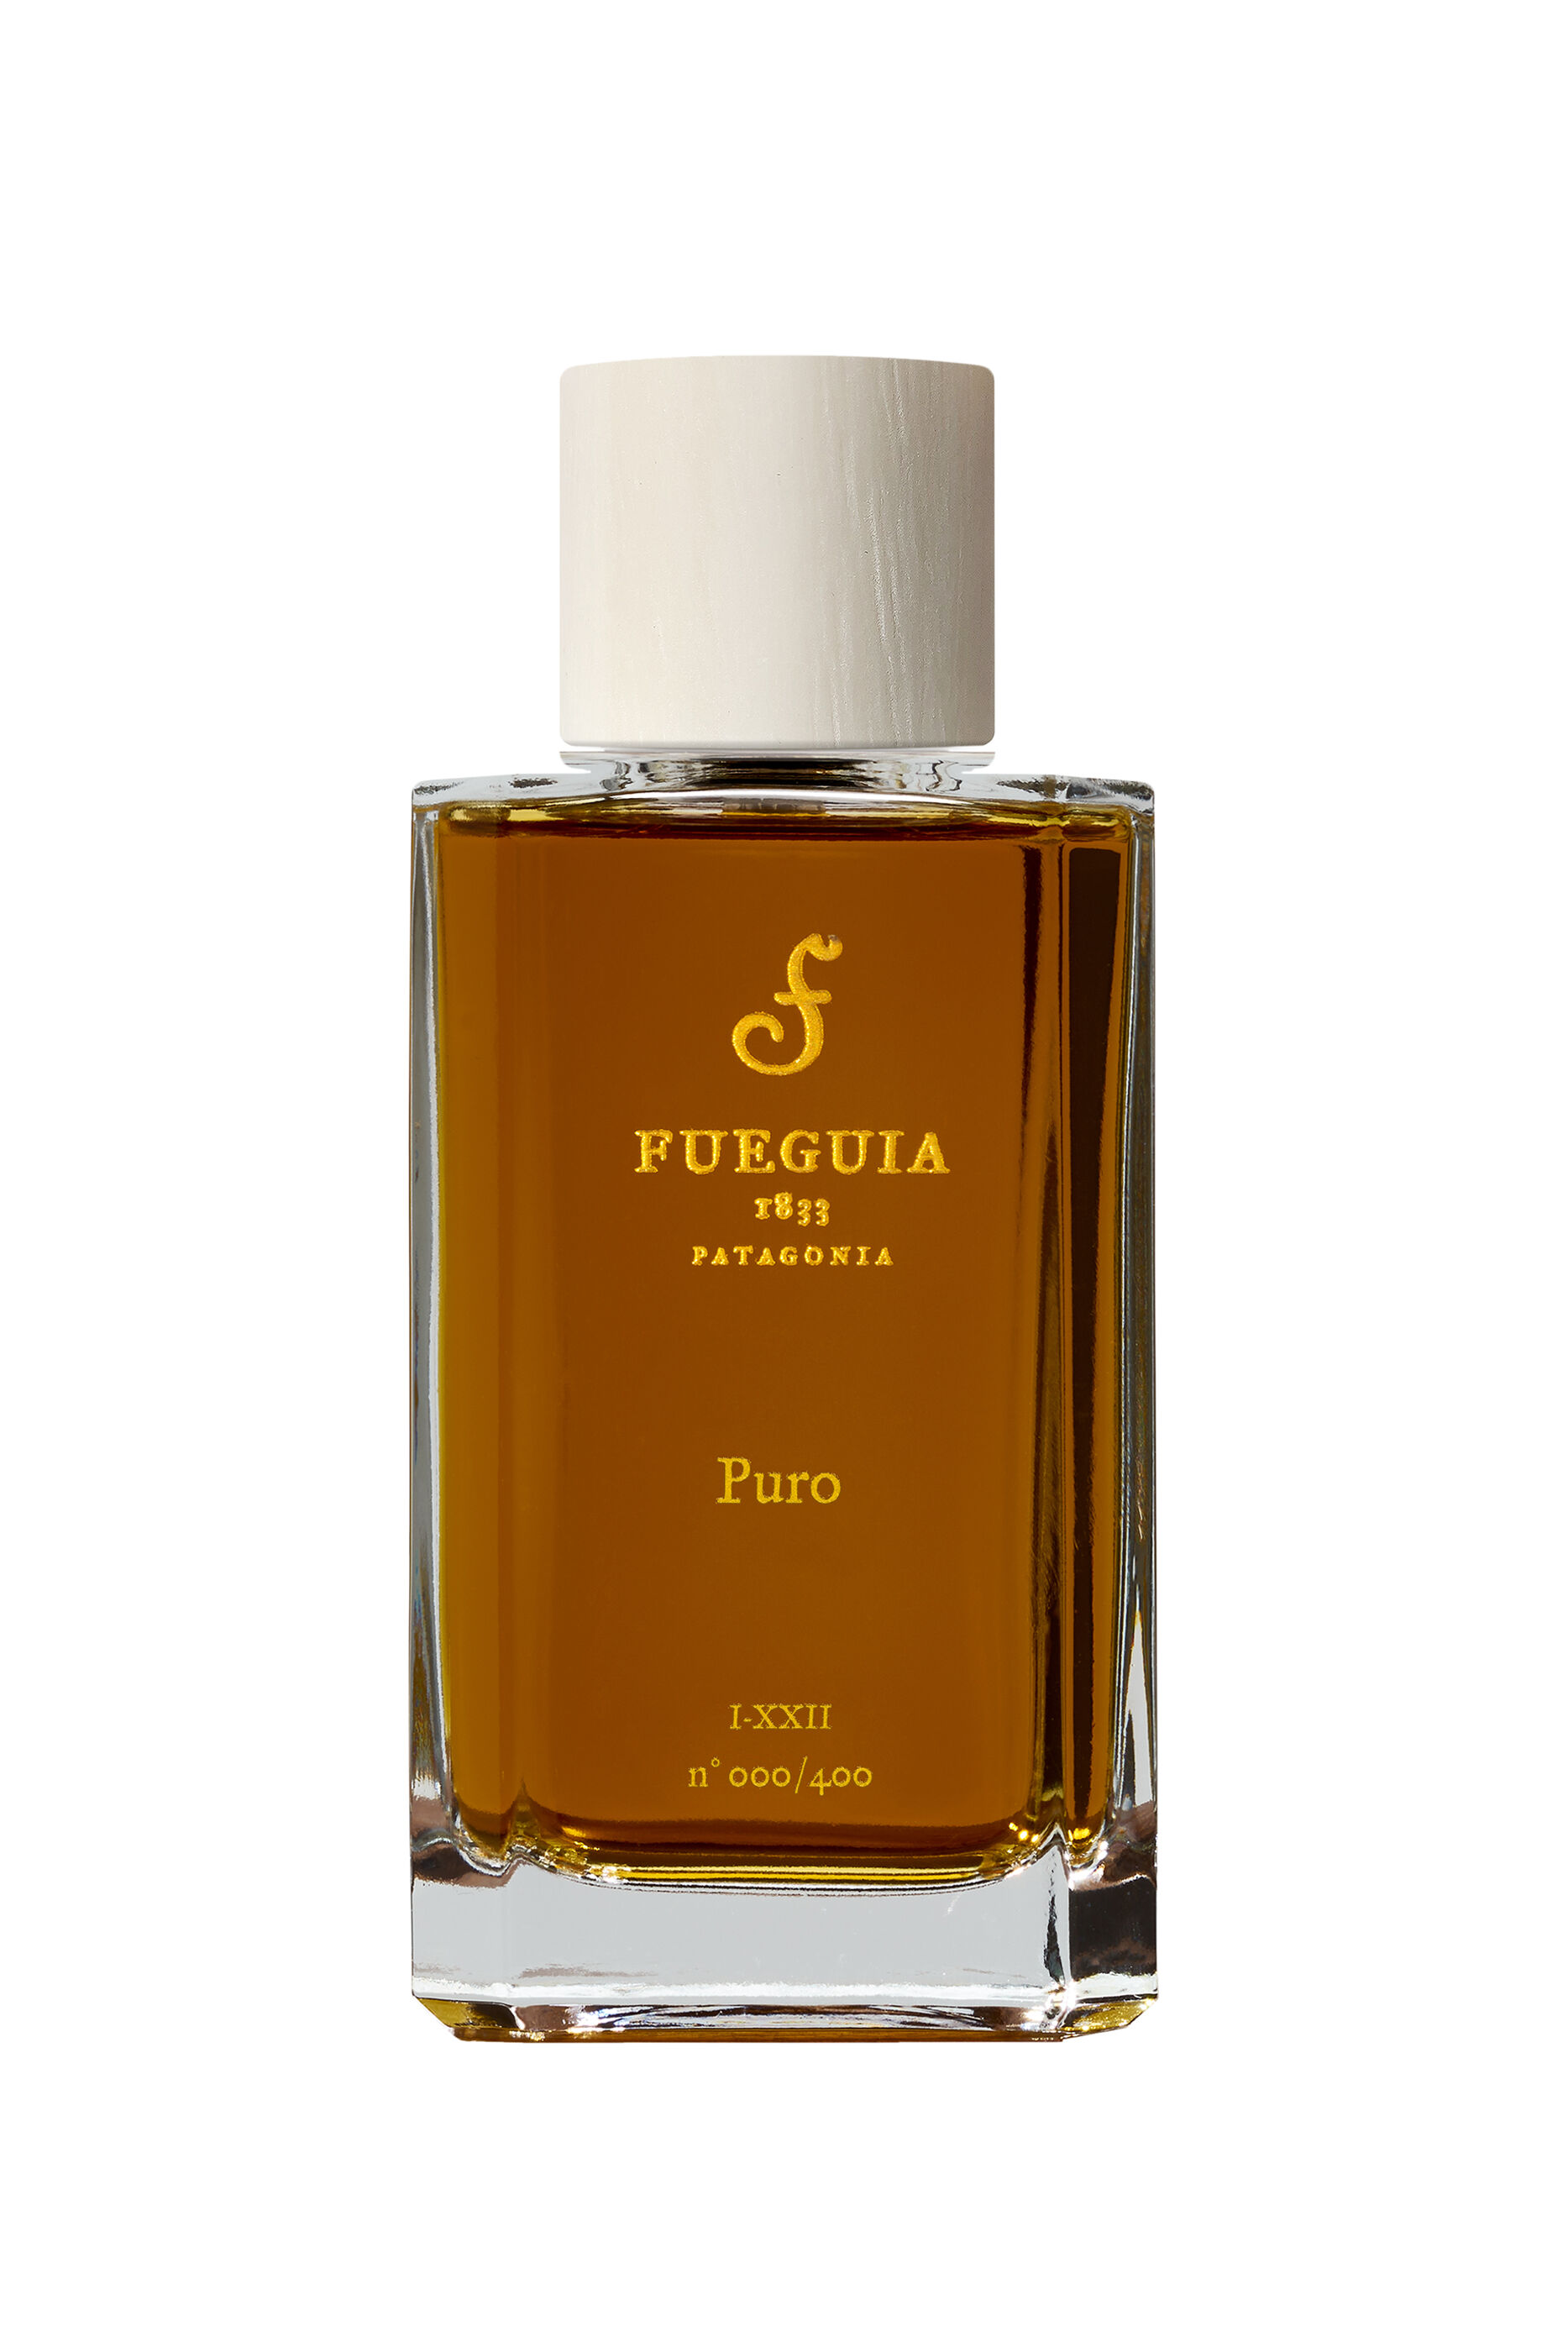 Fueguia 1833 Perfume For Women Online in UAE